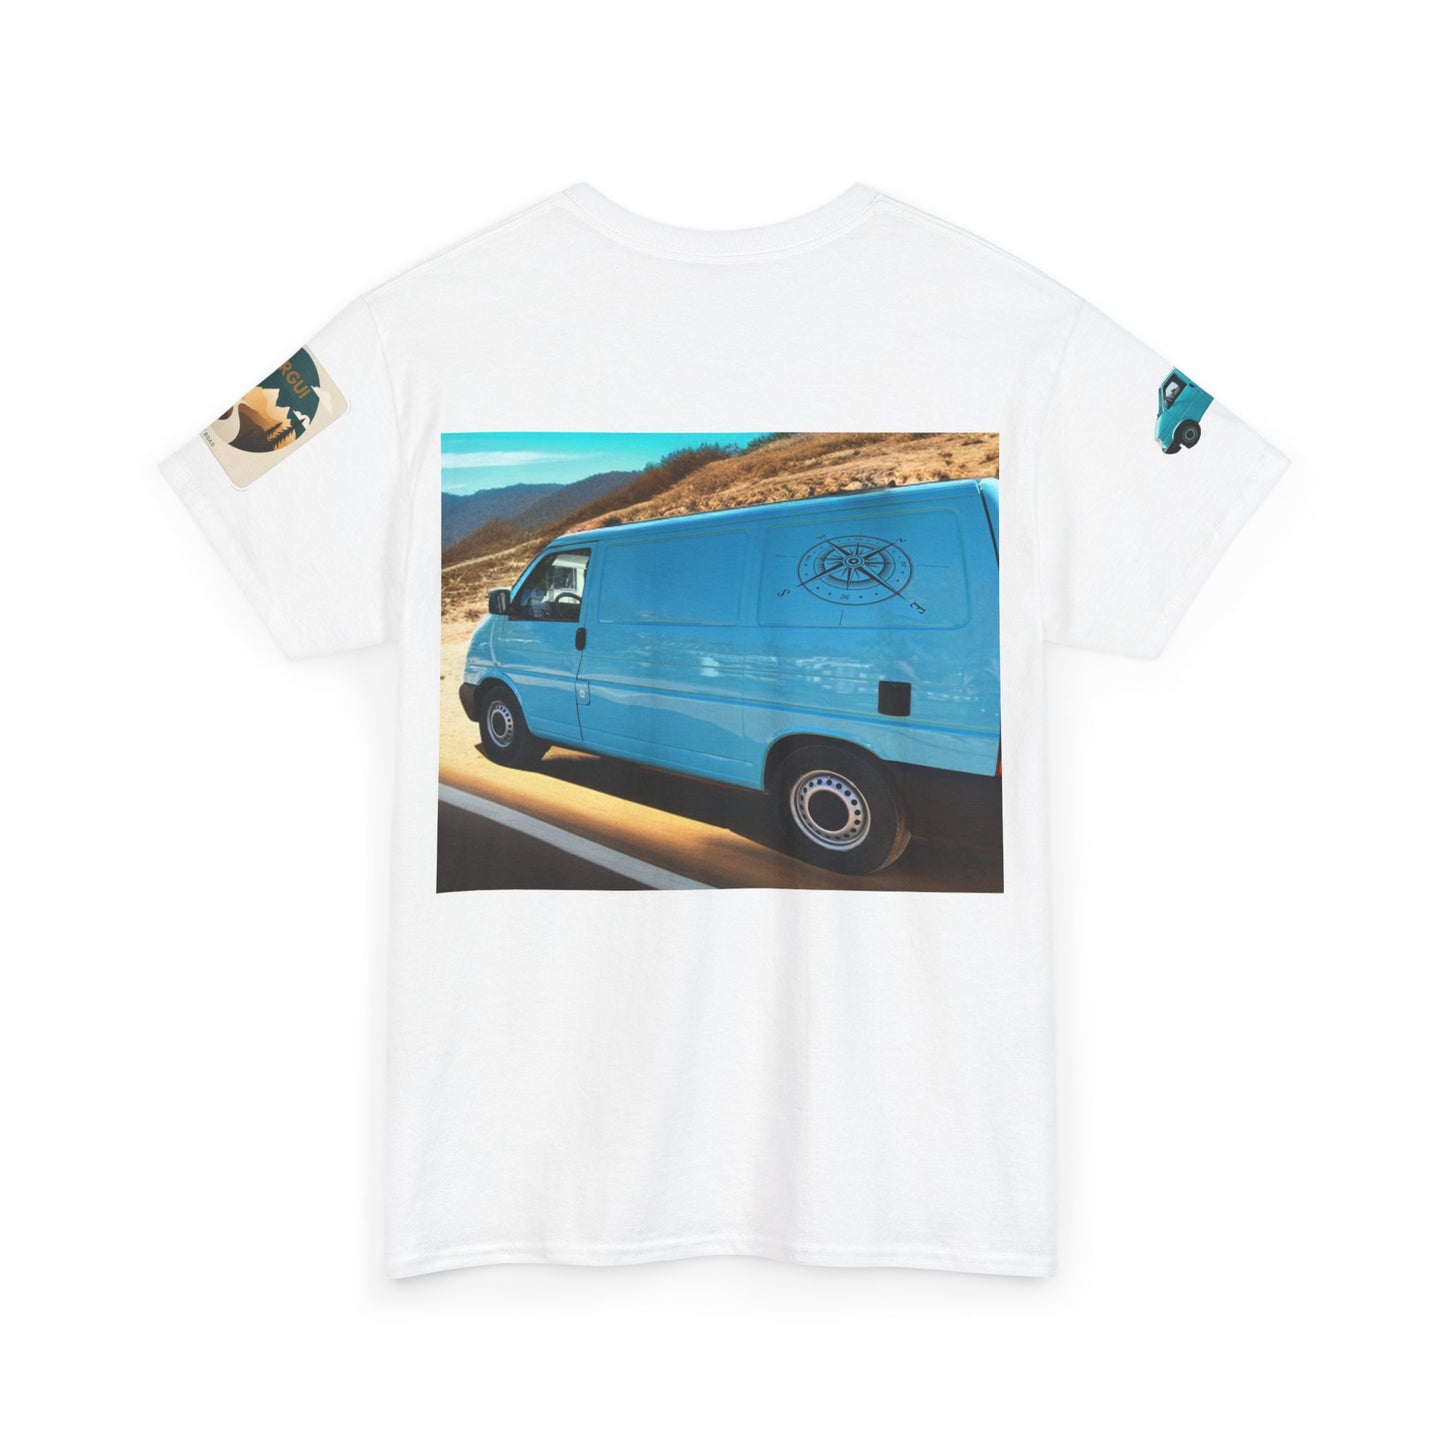 Camiseta personalizada de furgoneta, Camiseta de casa rodante personalizada, camisa caravana personalizada, Camisa camioneta personalizada.